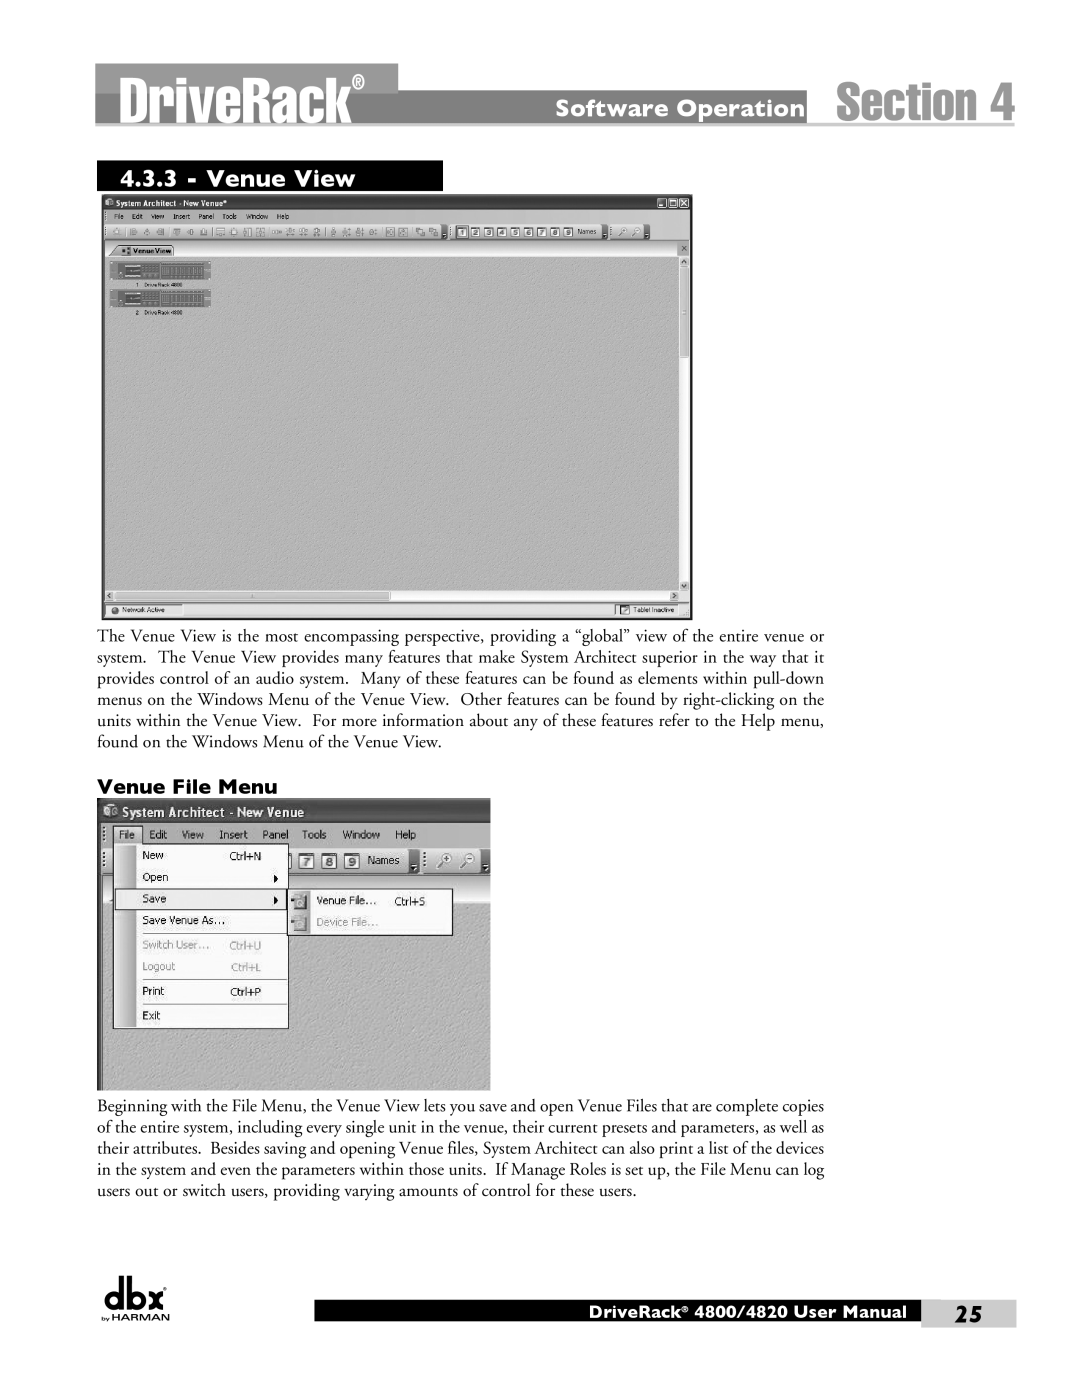 Harman user manual Venue View, Venue File Menu, DriveRack 4800/4820 User Manual 